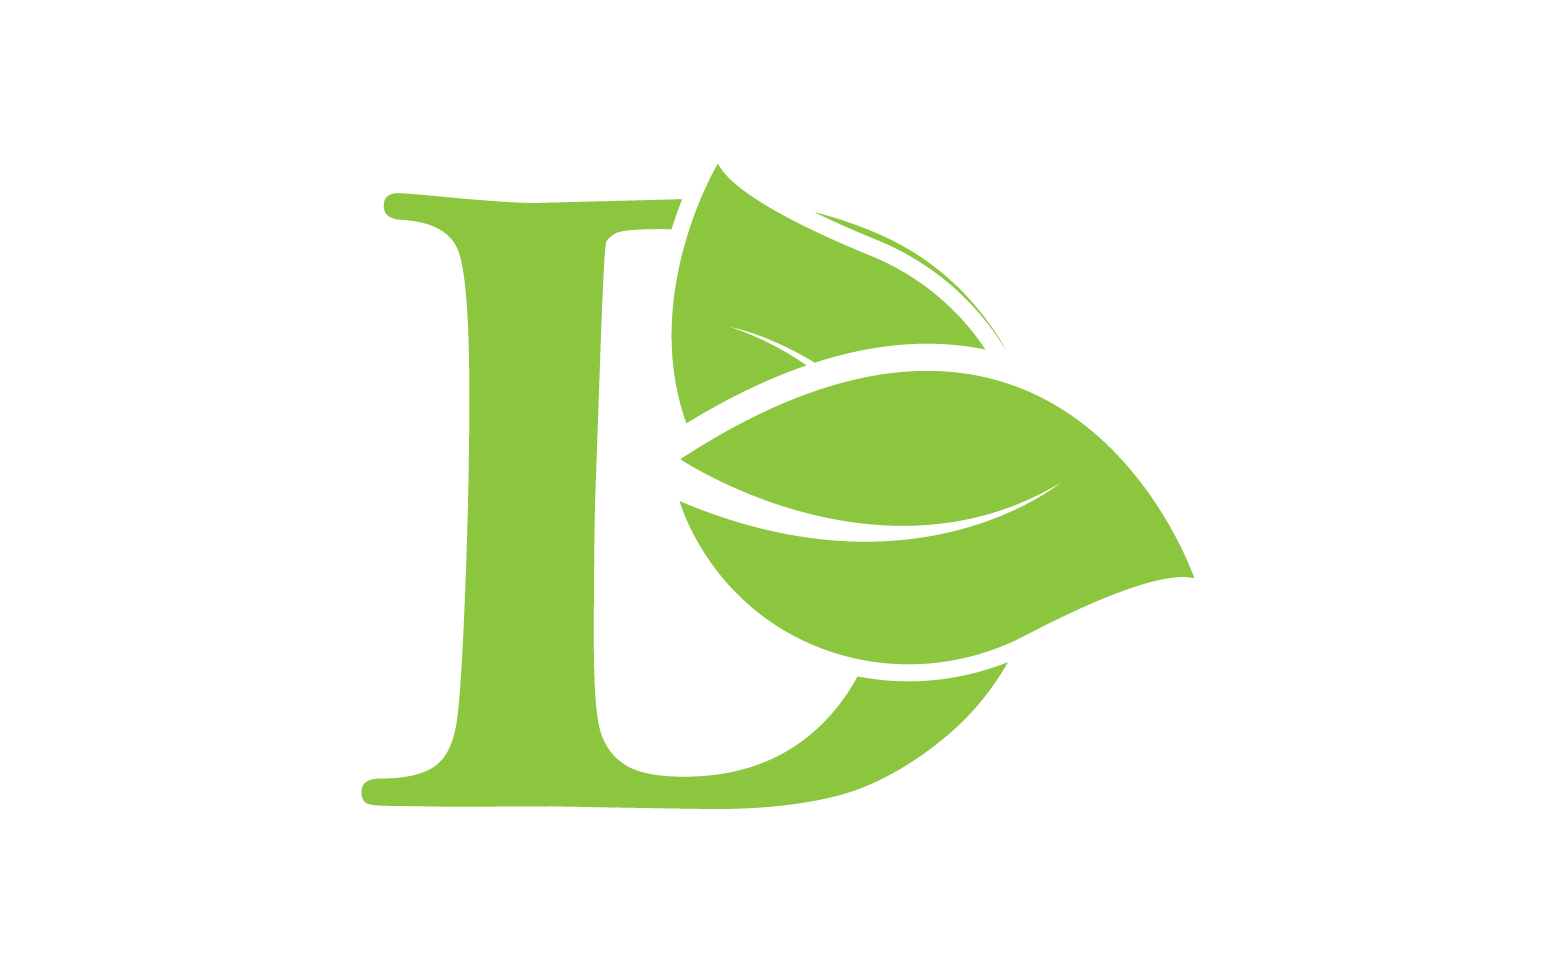 D letter logo leaf green vector version v 44